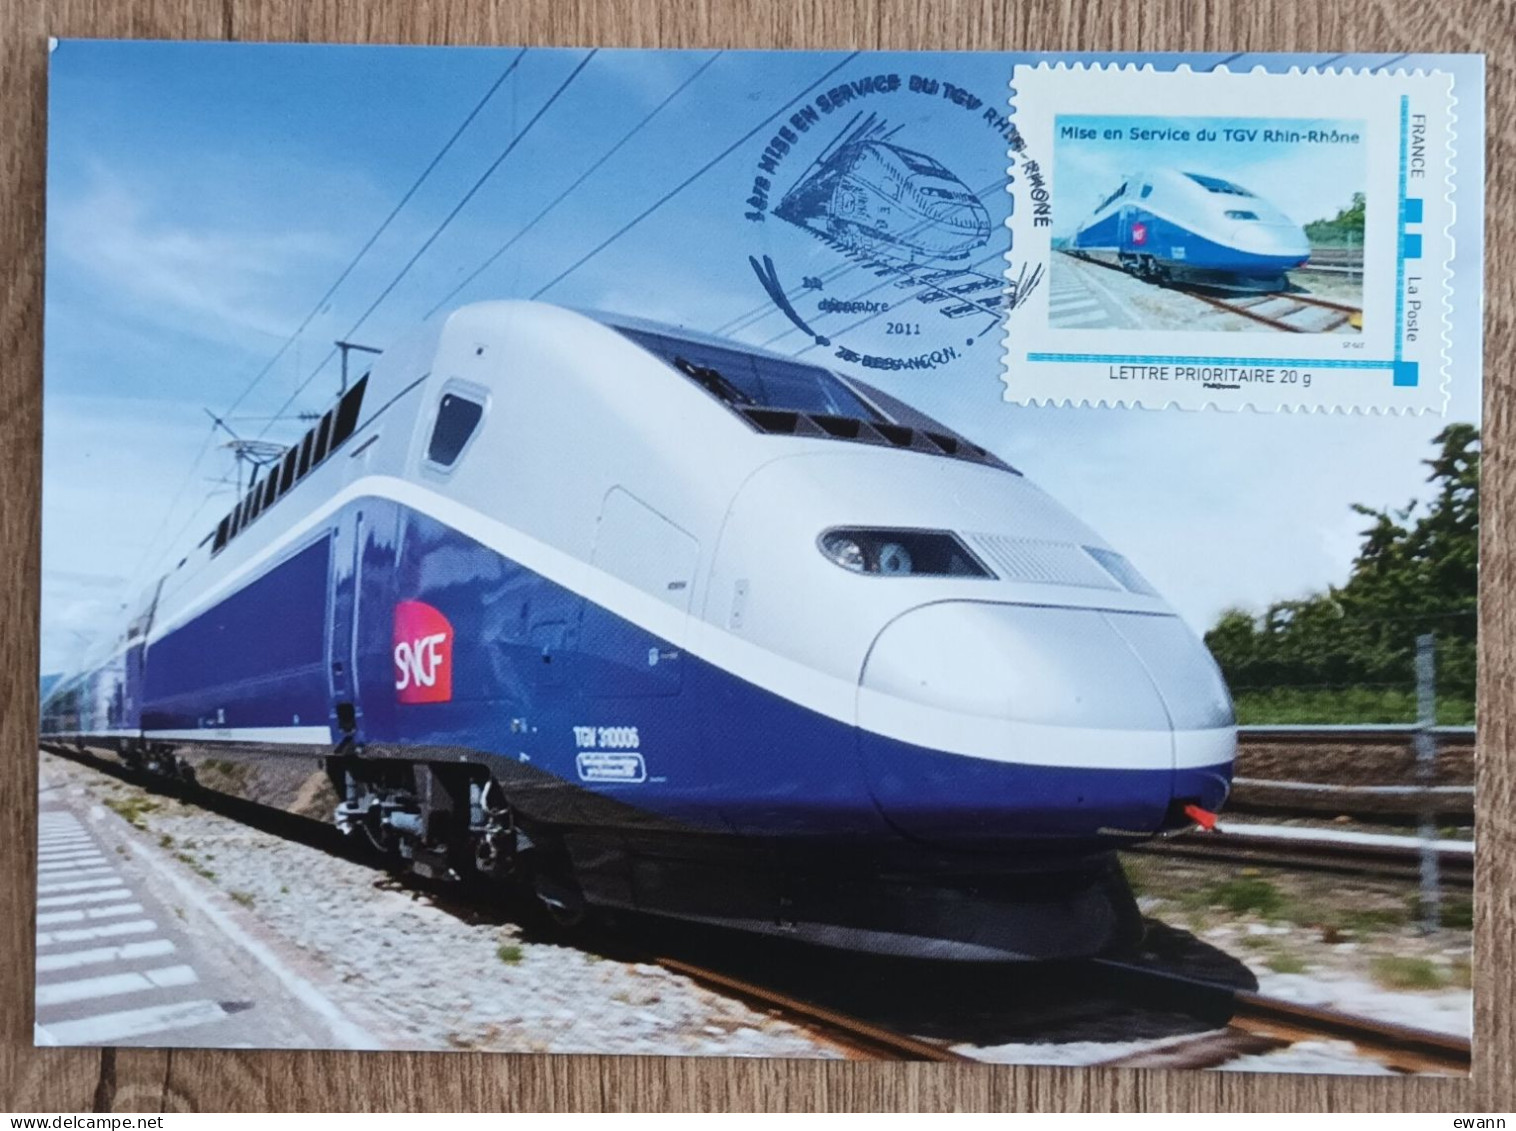 Montimbramoi - MISE EN SERVICE DU TGV RHIN RHONE - Besançon - 2011 - Lettres & Documents